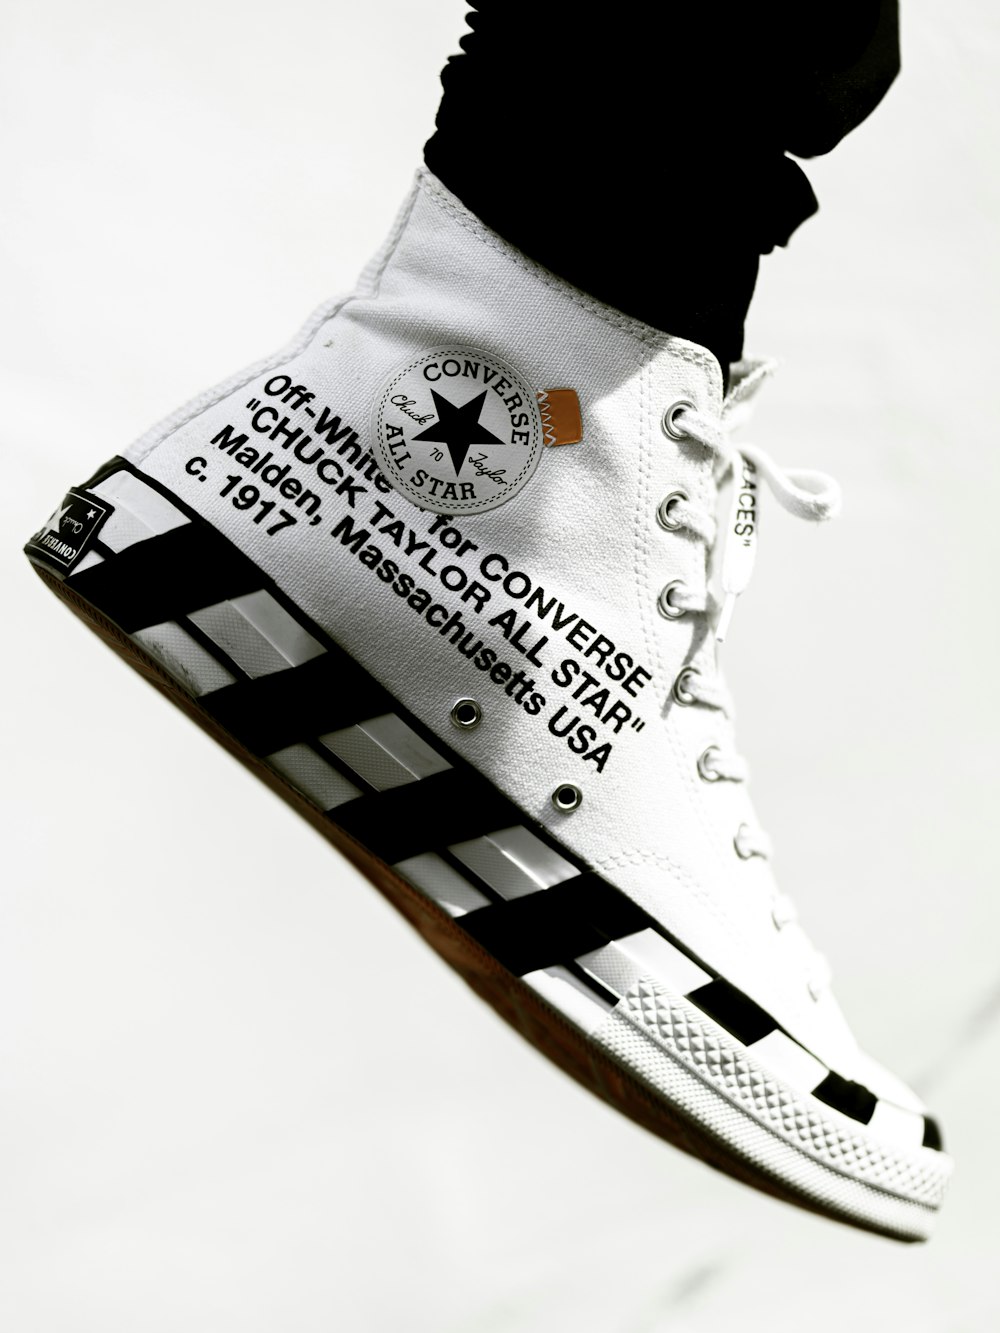 Zapatillas altas Converse All Star blancas y negras